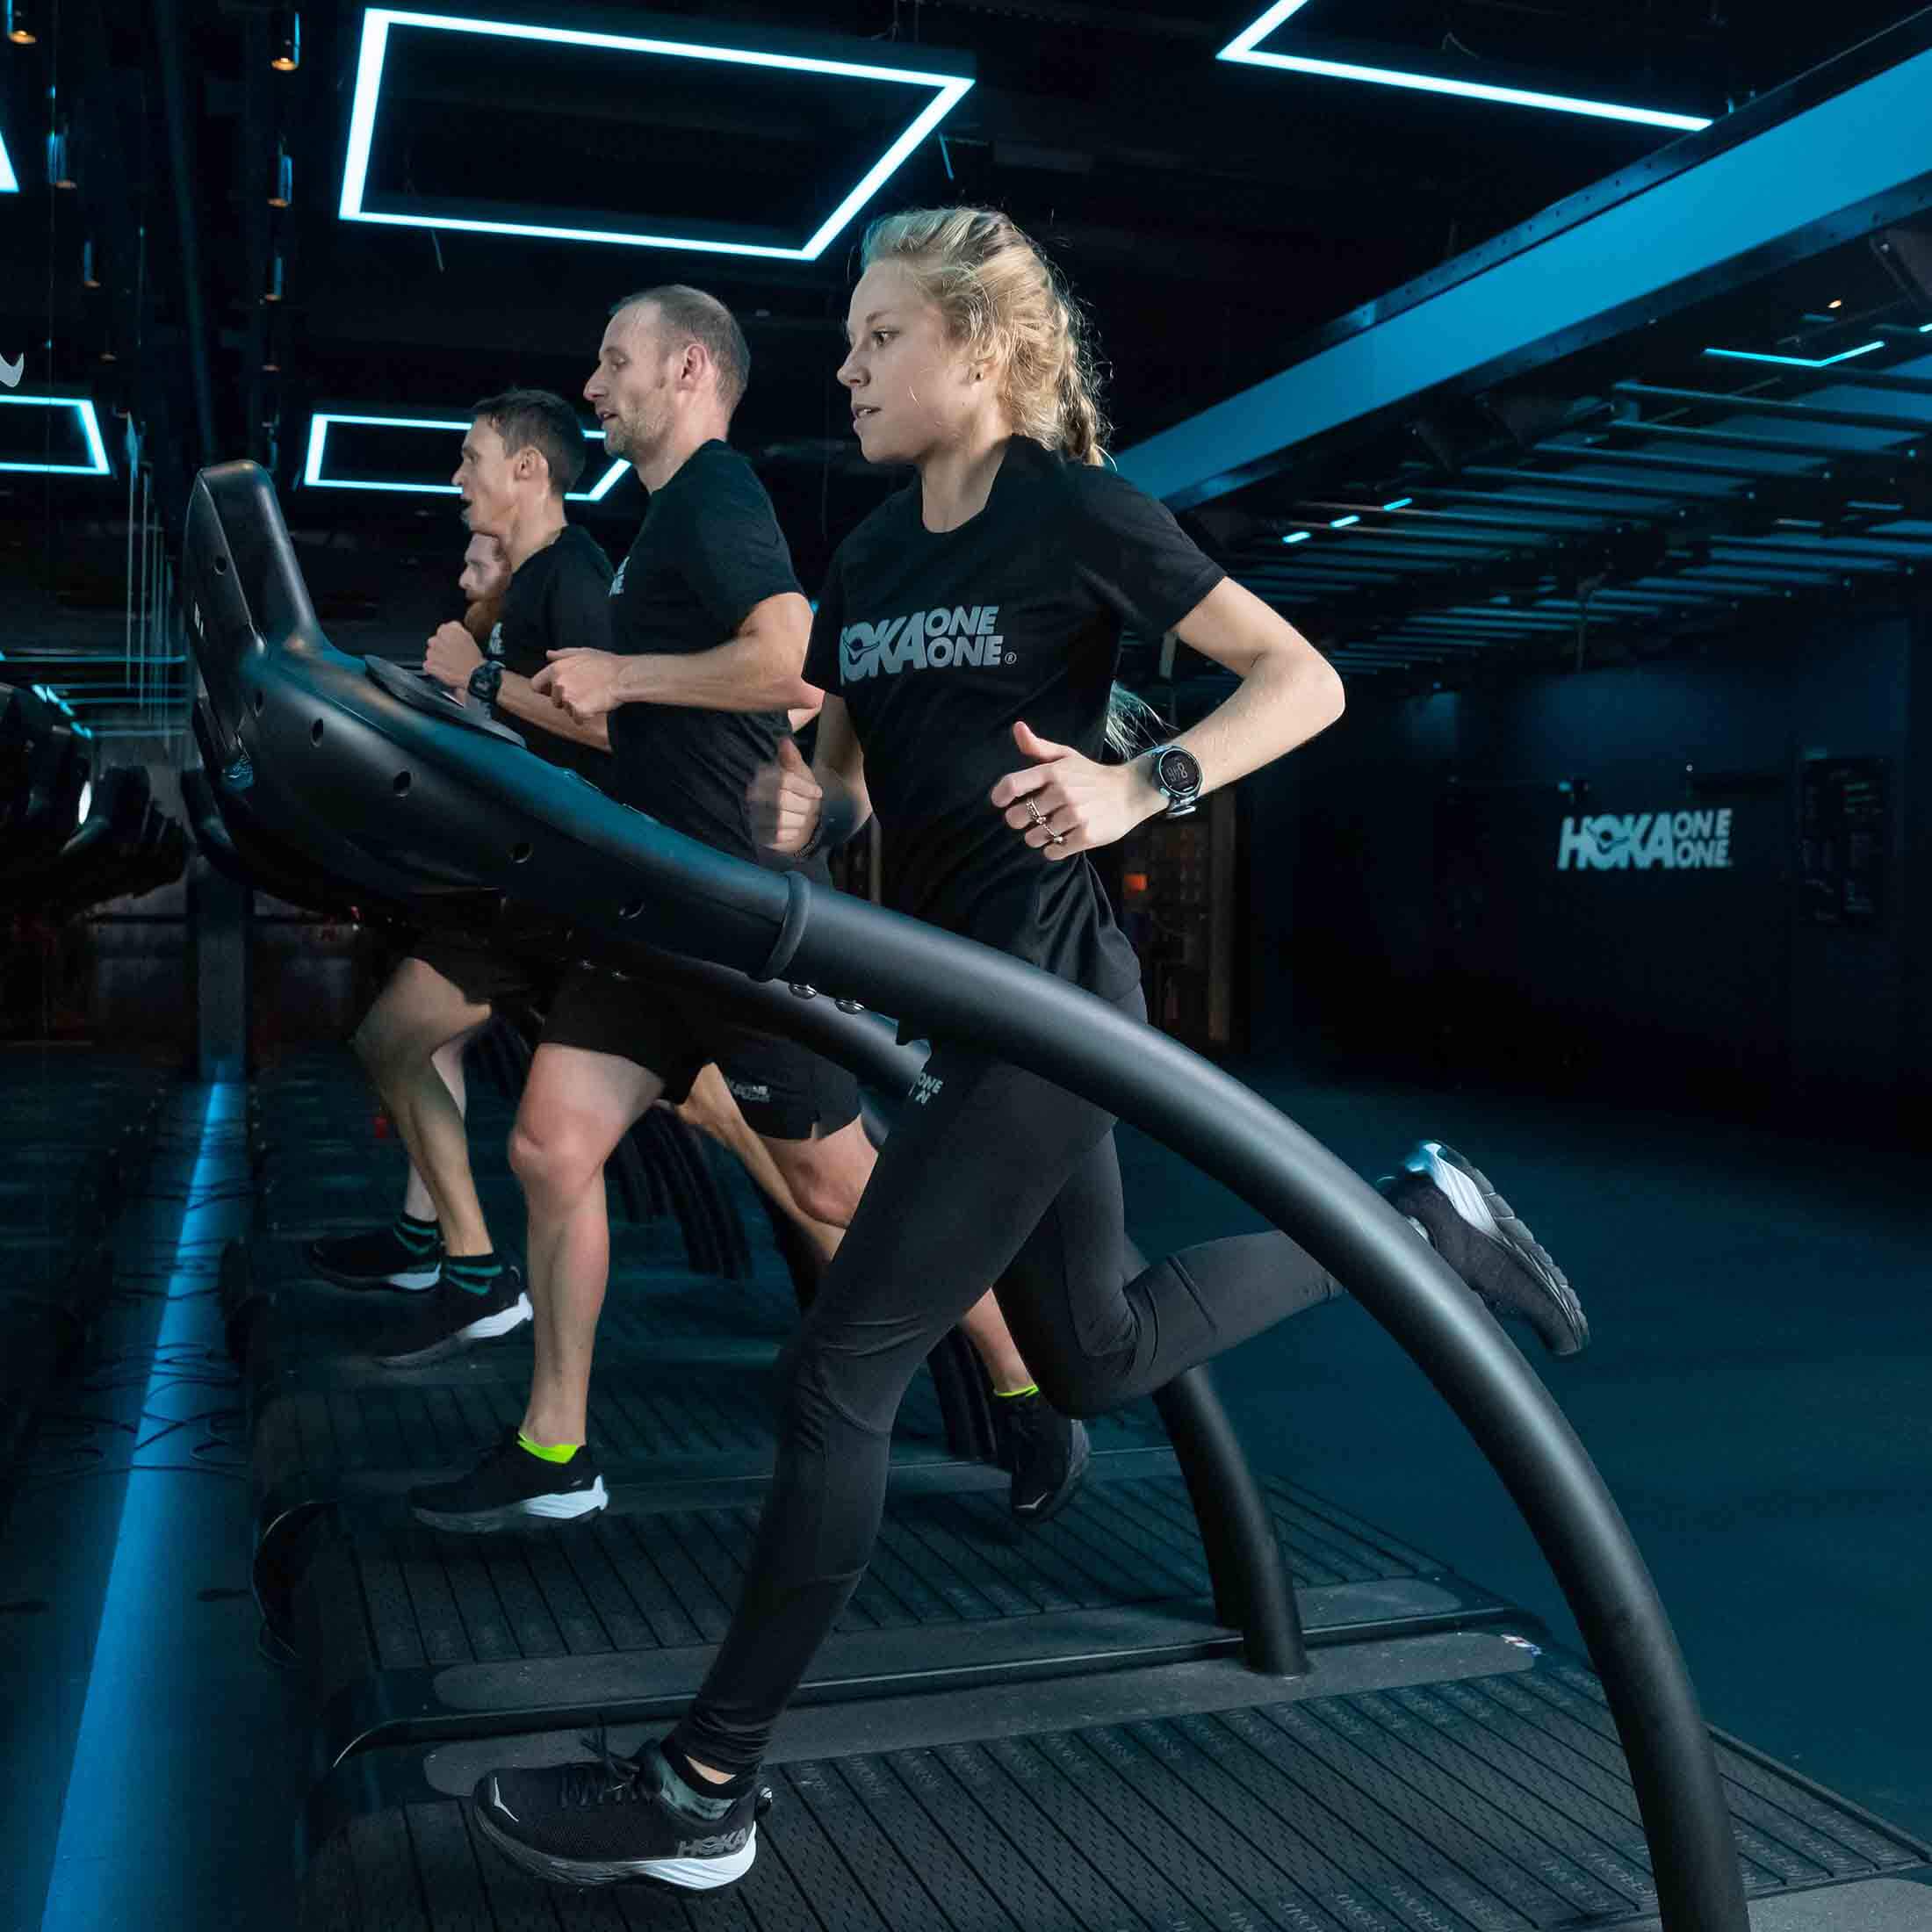 HOKA elite athlete Jenny Nesbitt runs on the treadmill at the Fly at Night event in London